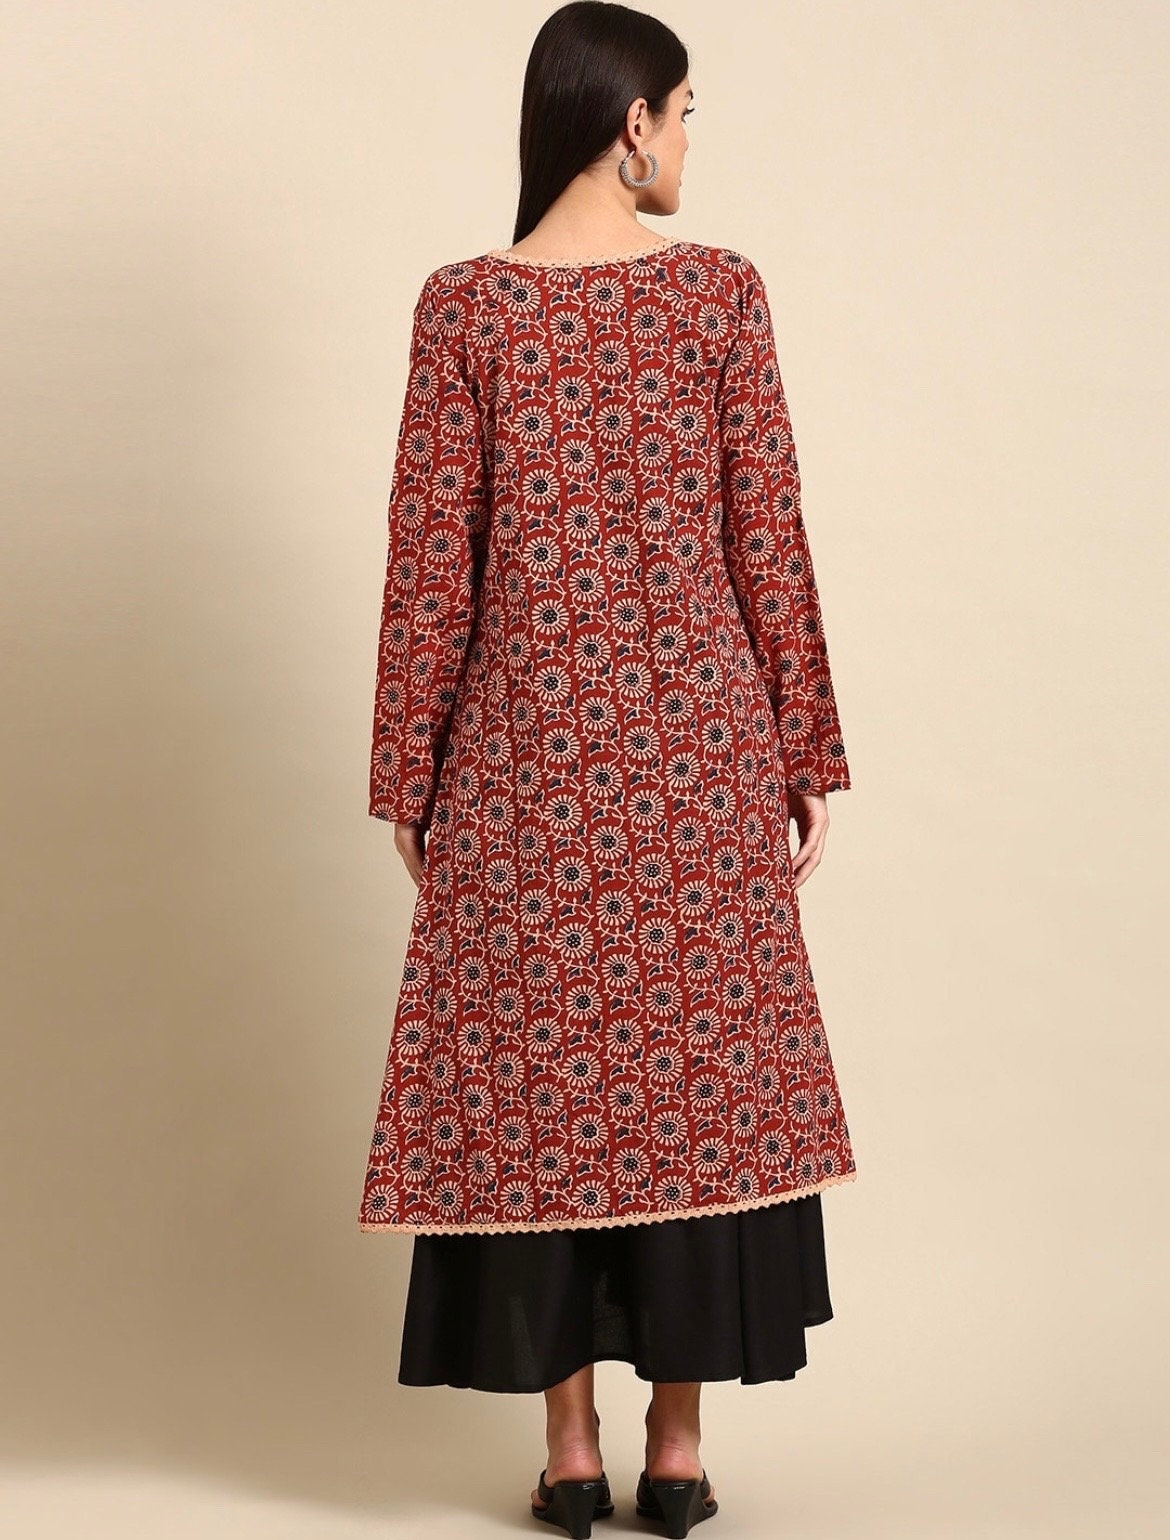 Indian Designer Daily Wear Cotton Kurtis Women Girls Top Pakistani Style  Kurtas | eBay